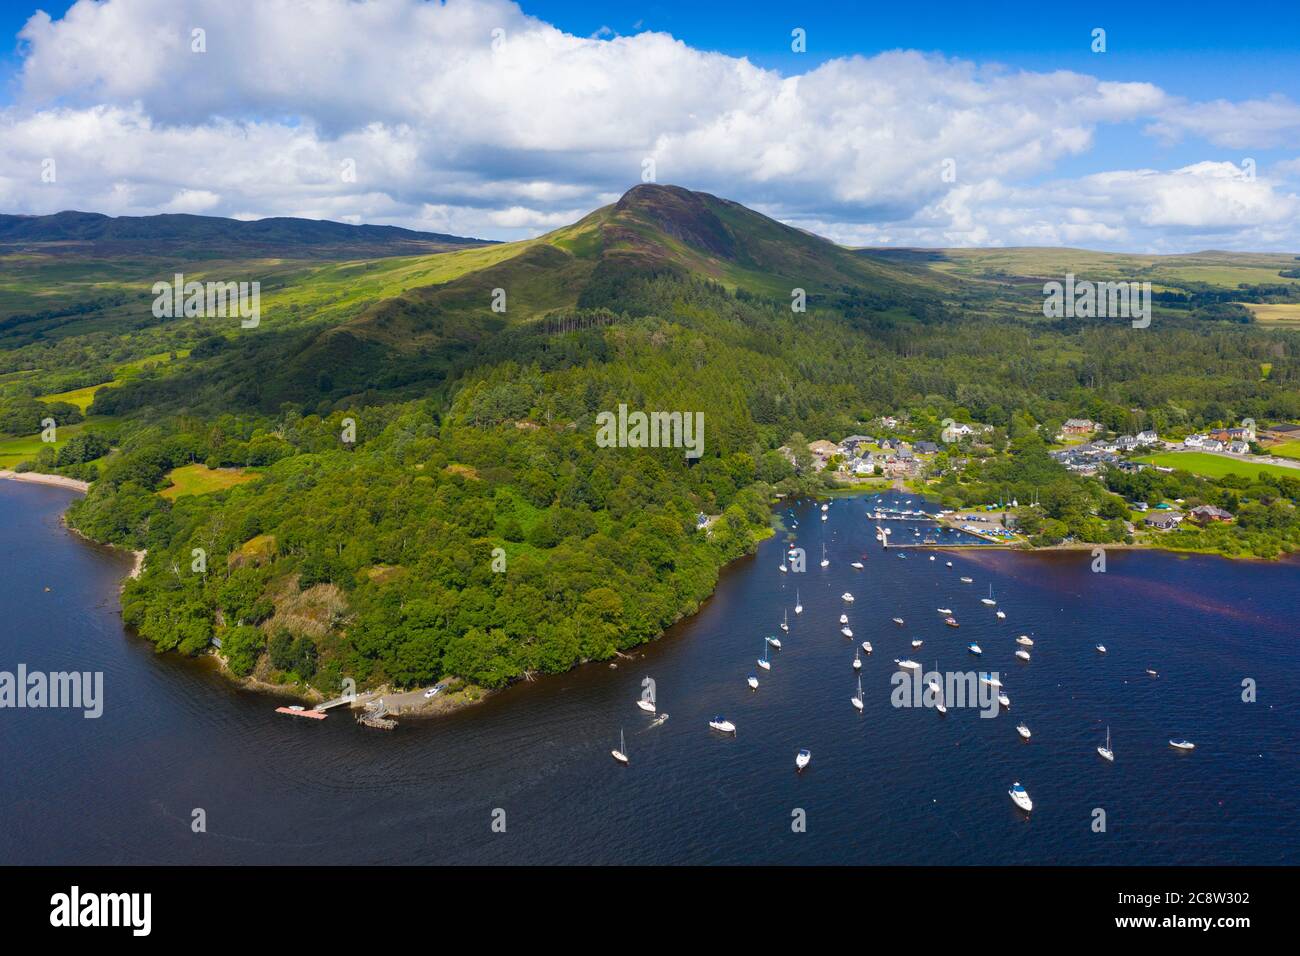 Vue aérienne du village de Balmaha et de Conic Hill sur les rives du Loch Lomond dans le Loch Lomond et du parc national des Trossachs, Écosse, Royaume-Uni Banque D'Images